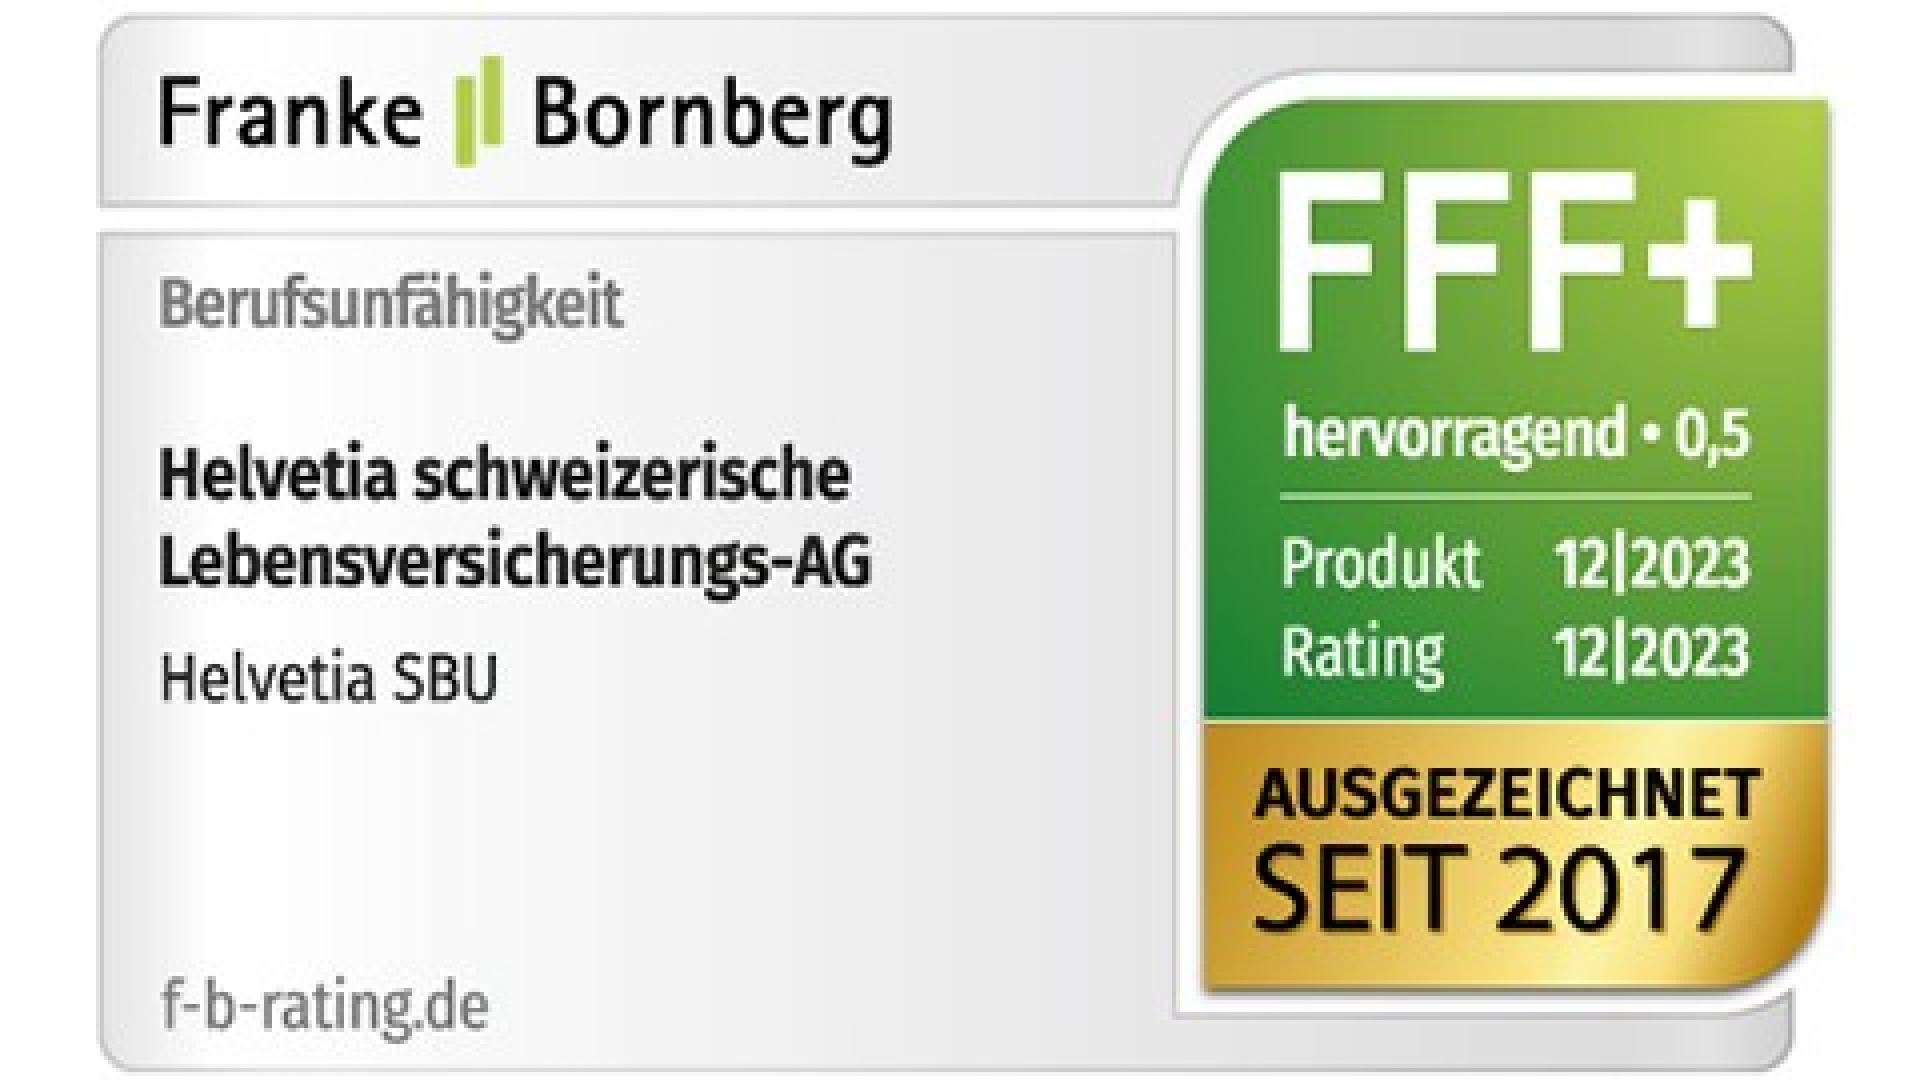 SBU-Siegel Franke und Bornberg (12/2023): Hervorragend –FFF+